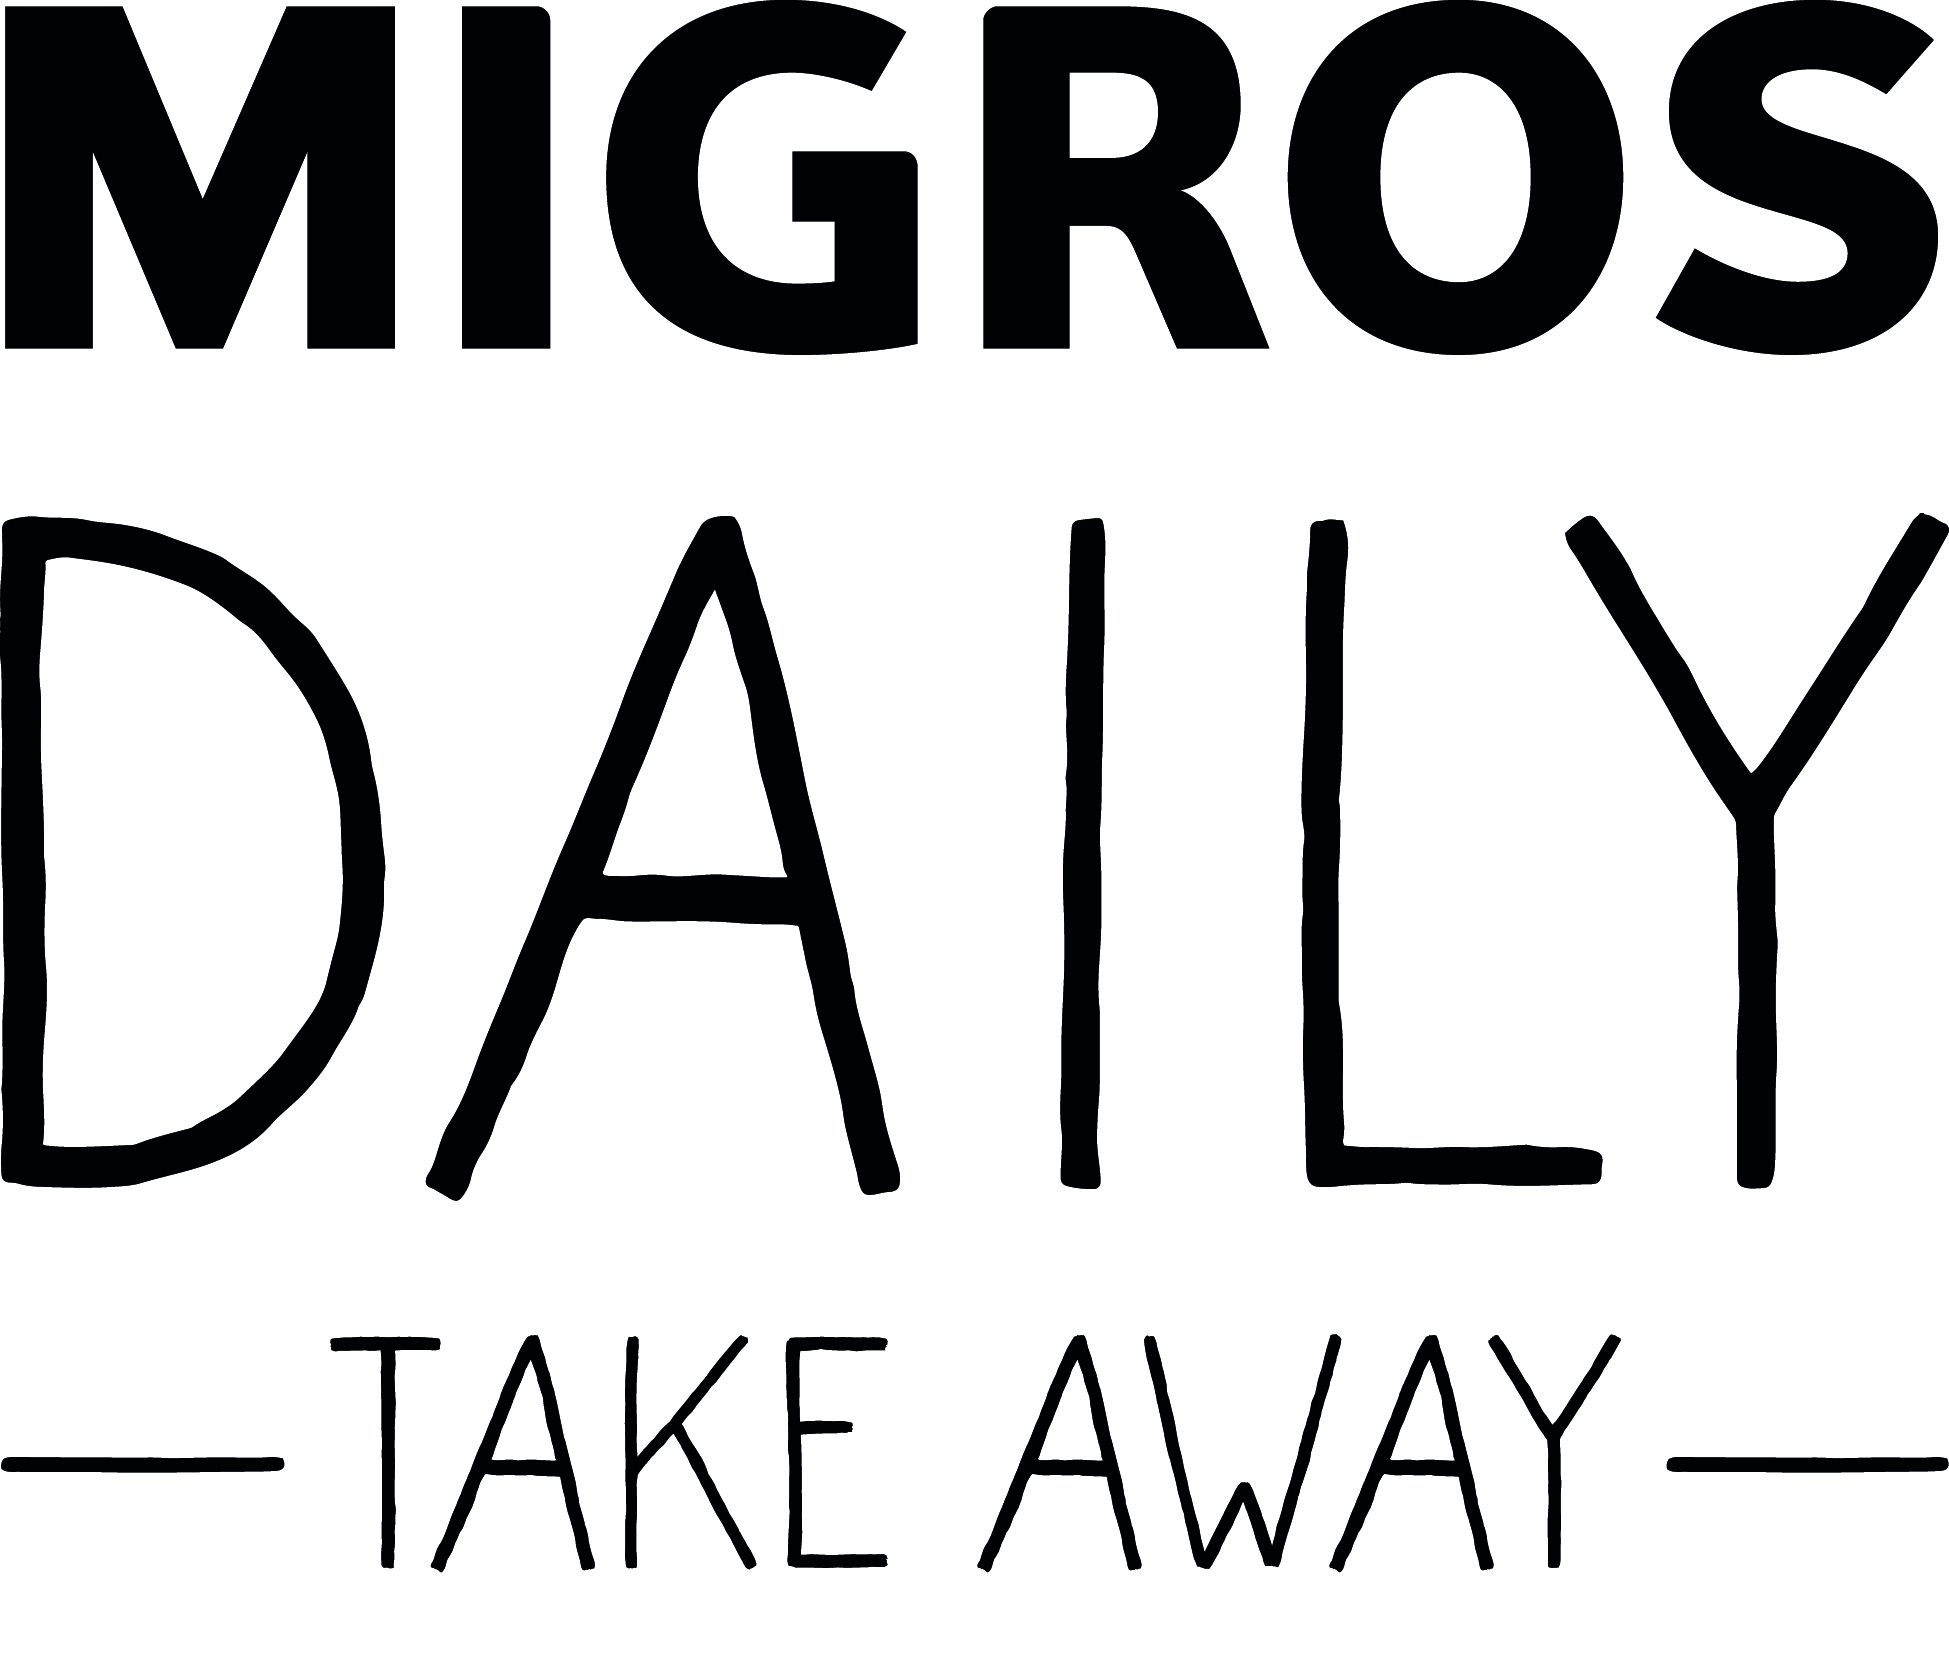 Migros Daily Take Away (Bahnhof)